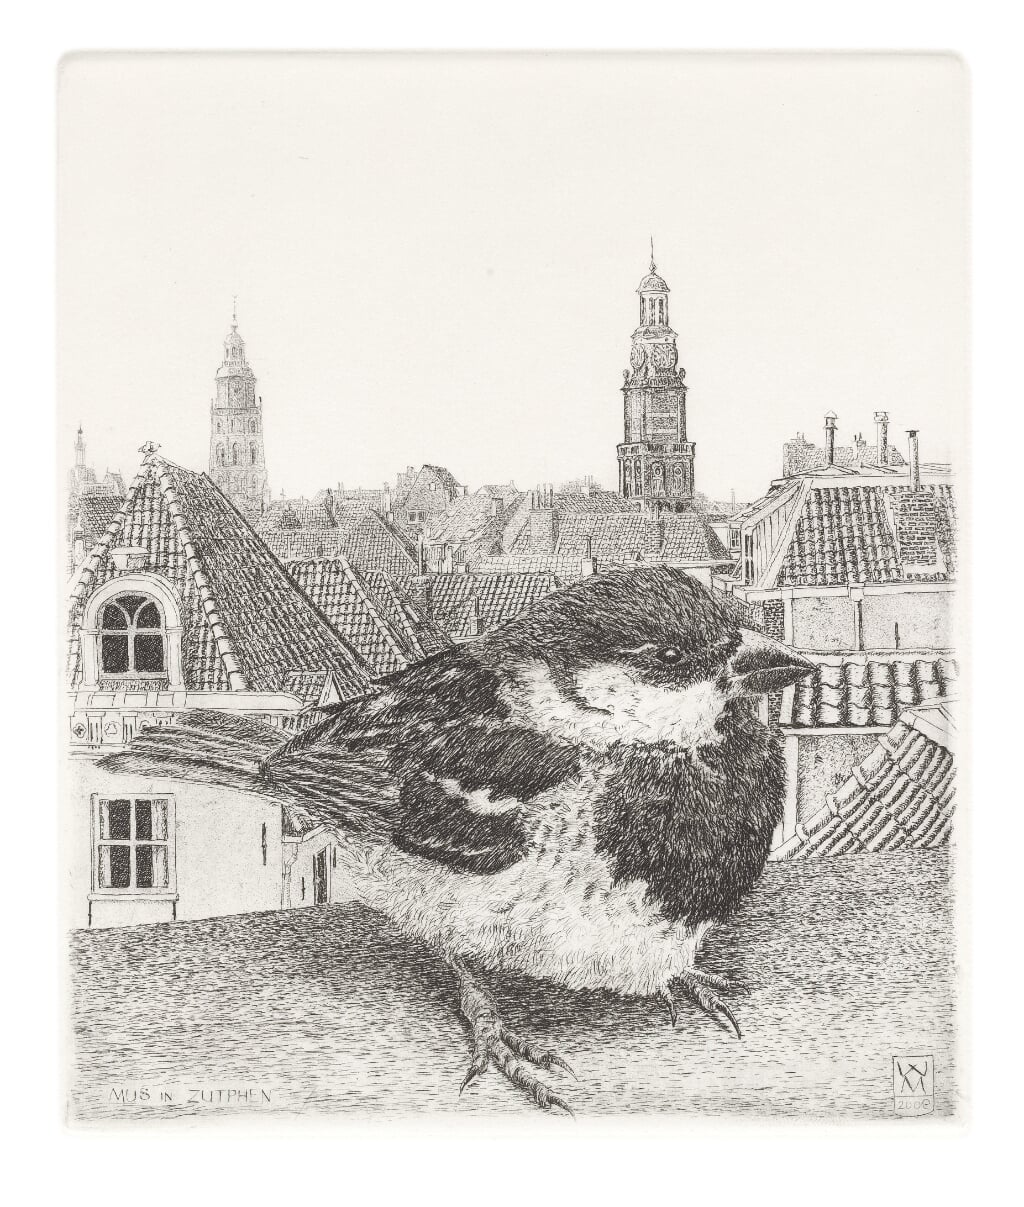 Wim van der Meij, Huismus, ets, 2009, 145 x 120 mm.  